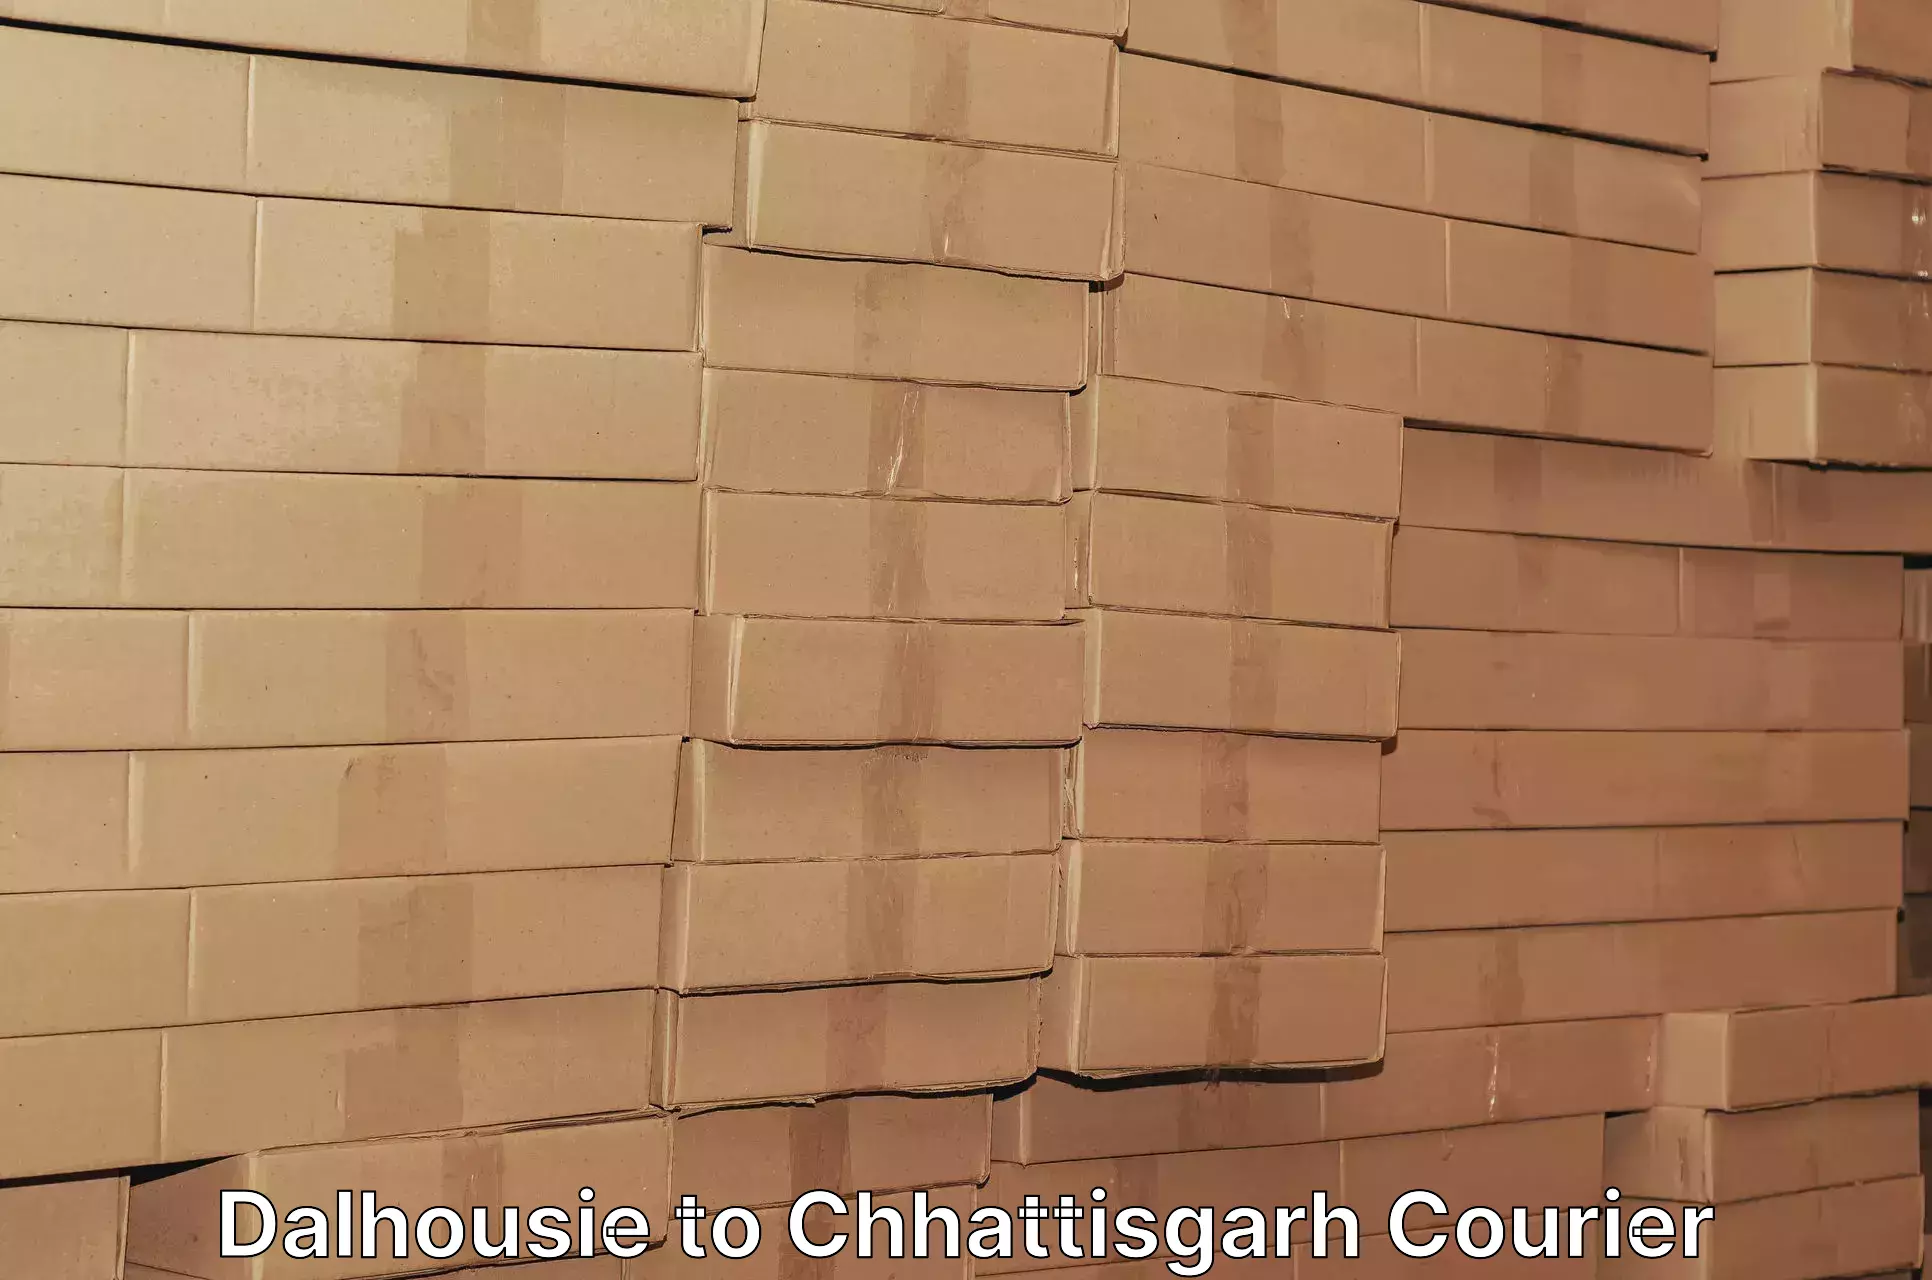 Courier service comparison Dalhousie to Raigarh Chhattisgarh